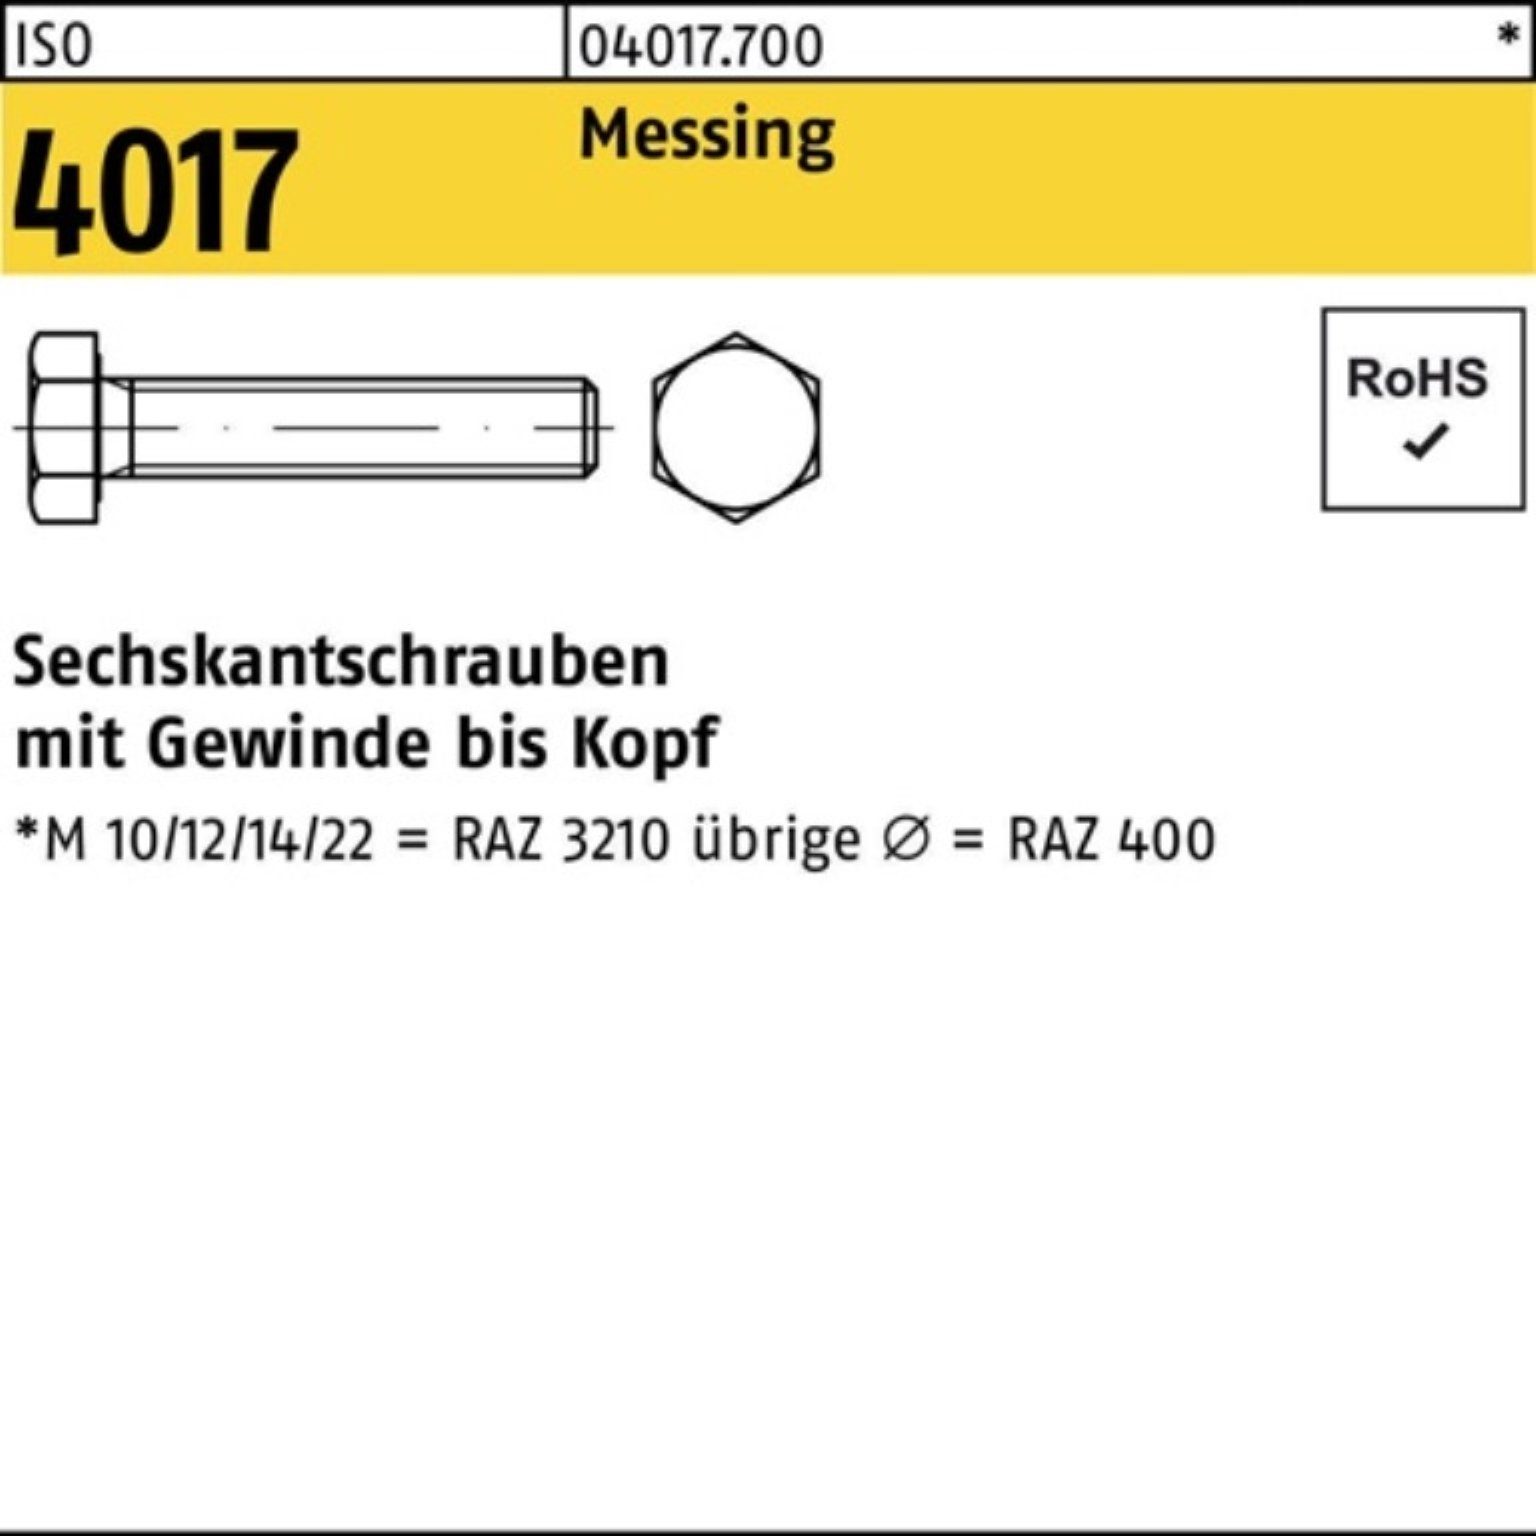 ISO Sechskantschraube 4017 45 Sechskantschraube M6x Bufab Messing ISO 100er Stück Pack VG 100